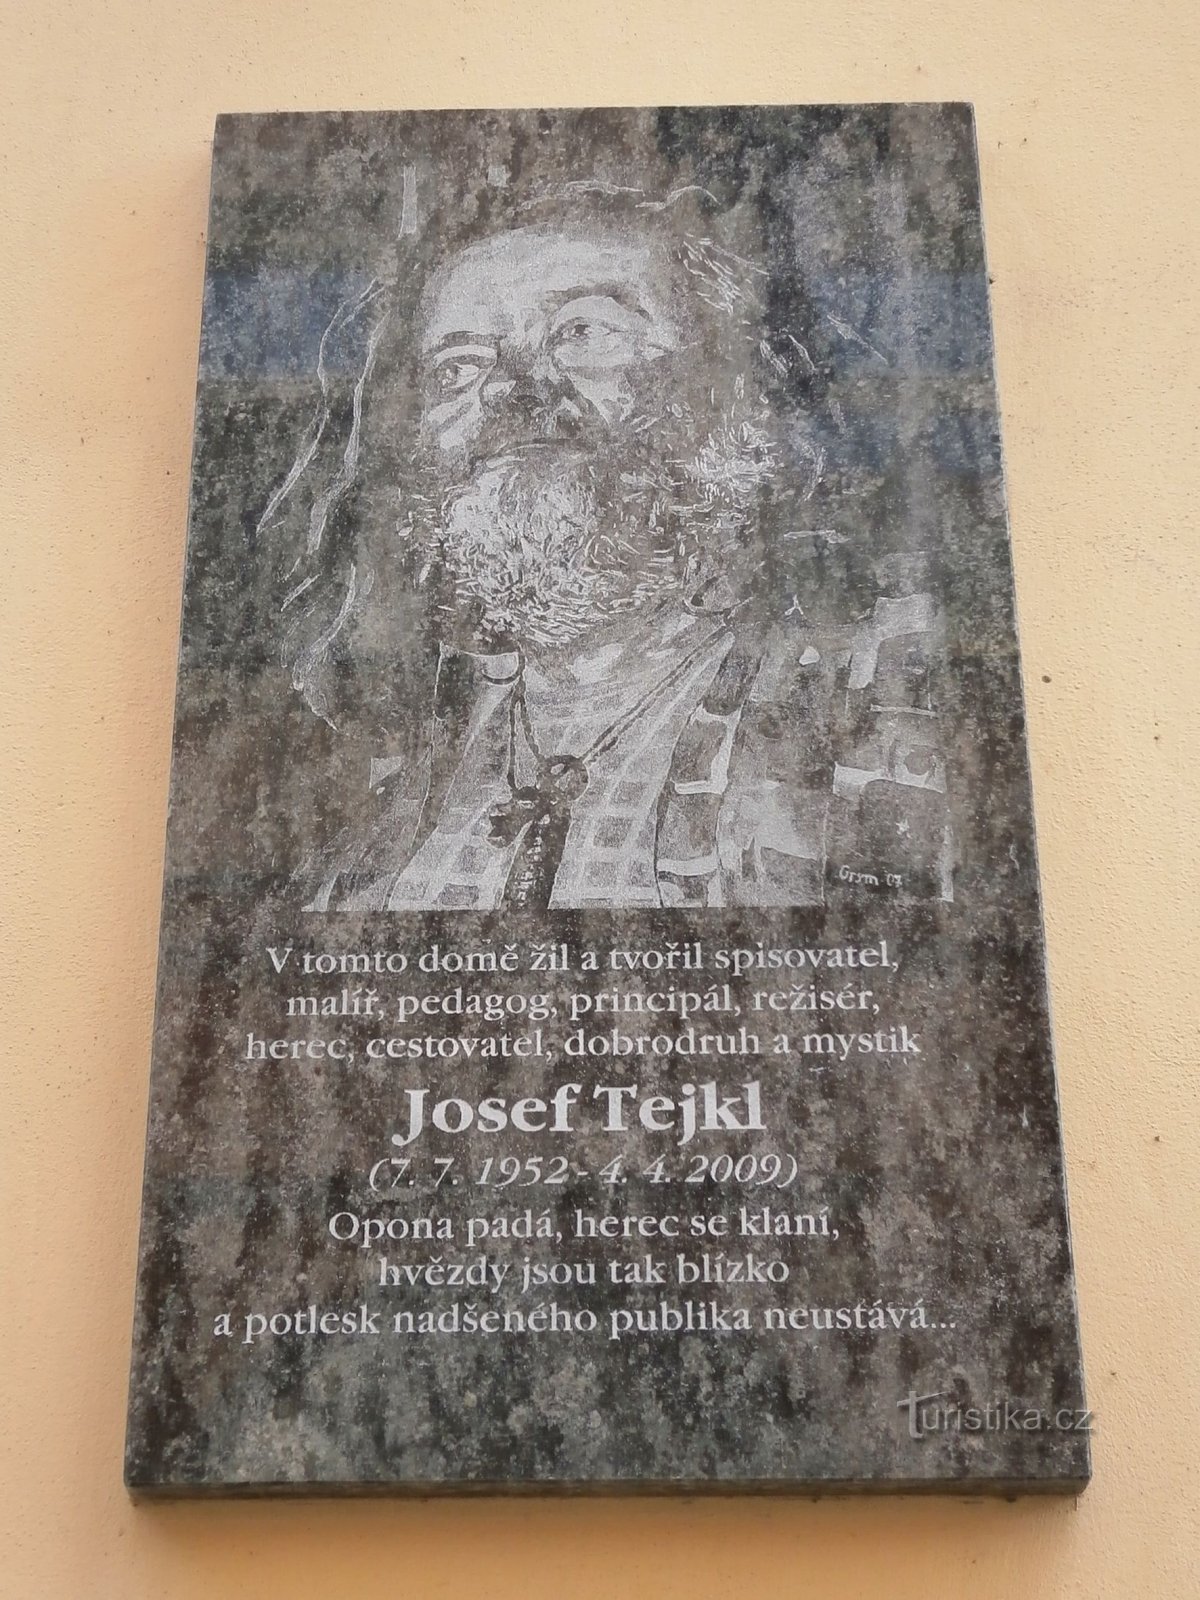 Mindeplade til Josef Tejkl (Hradec Králové, 15.7.2013)